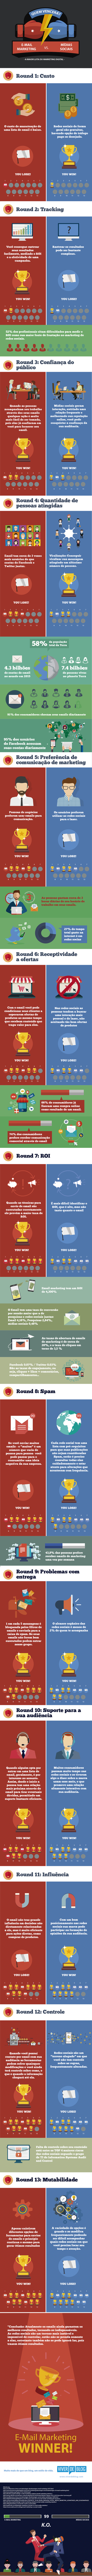 Infográfico Email Marketing vs Mídias Sociais